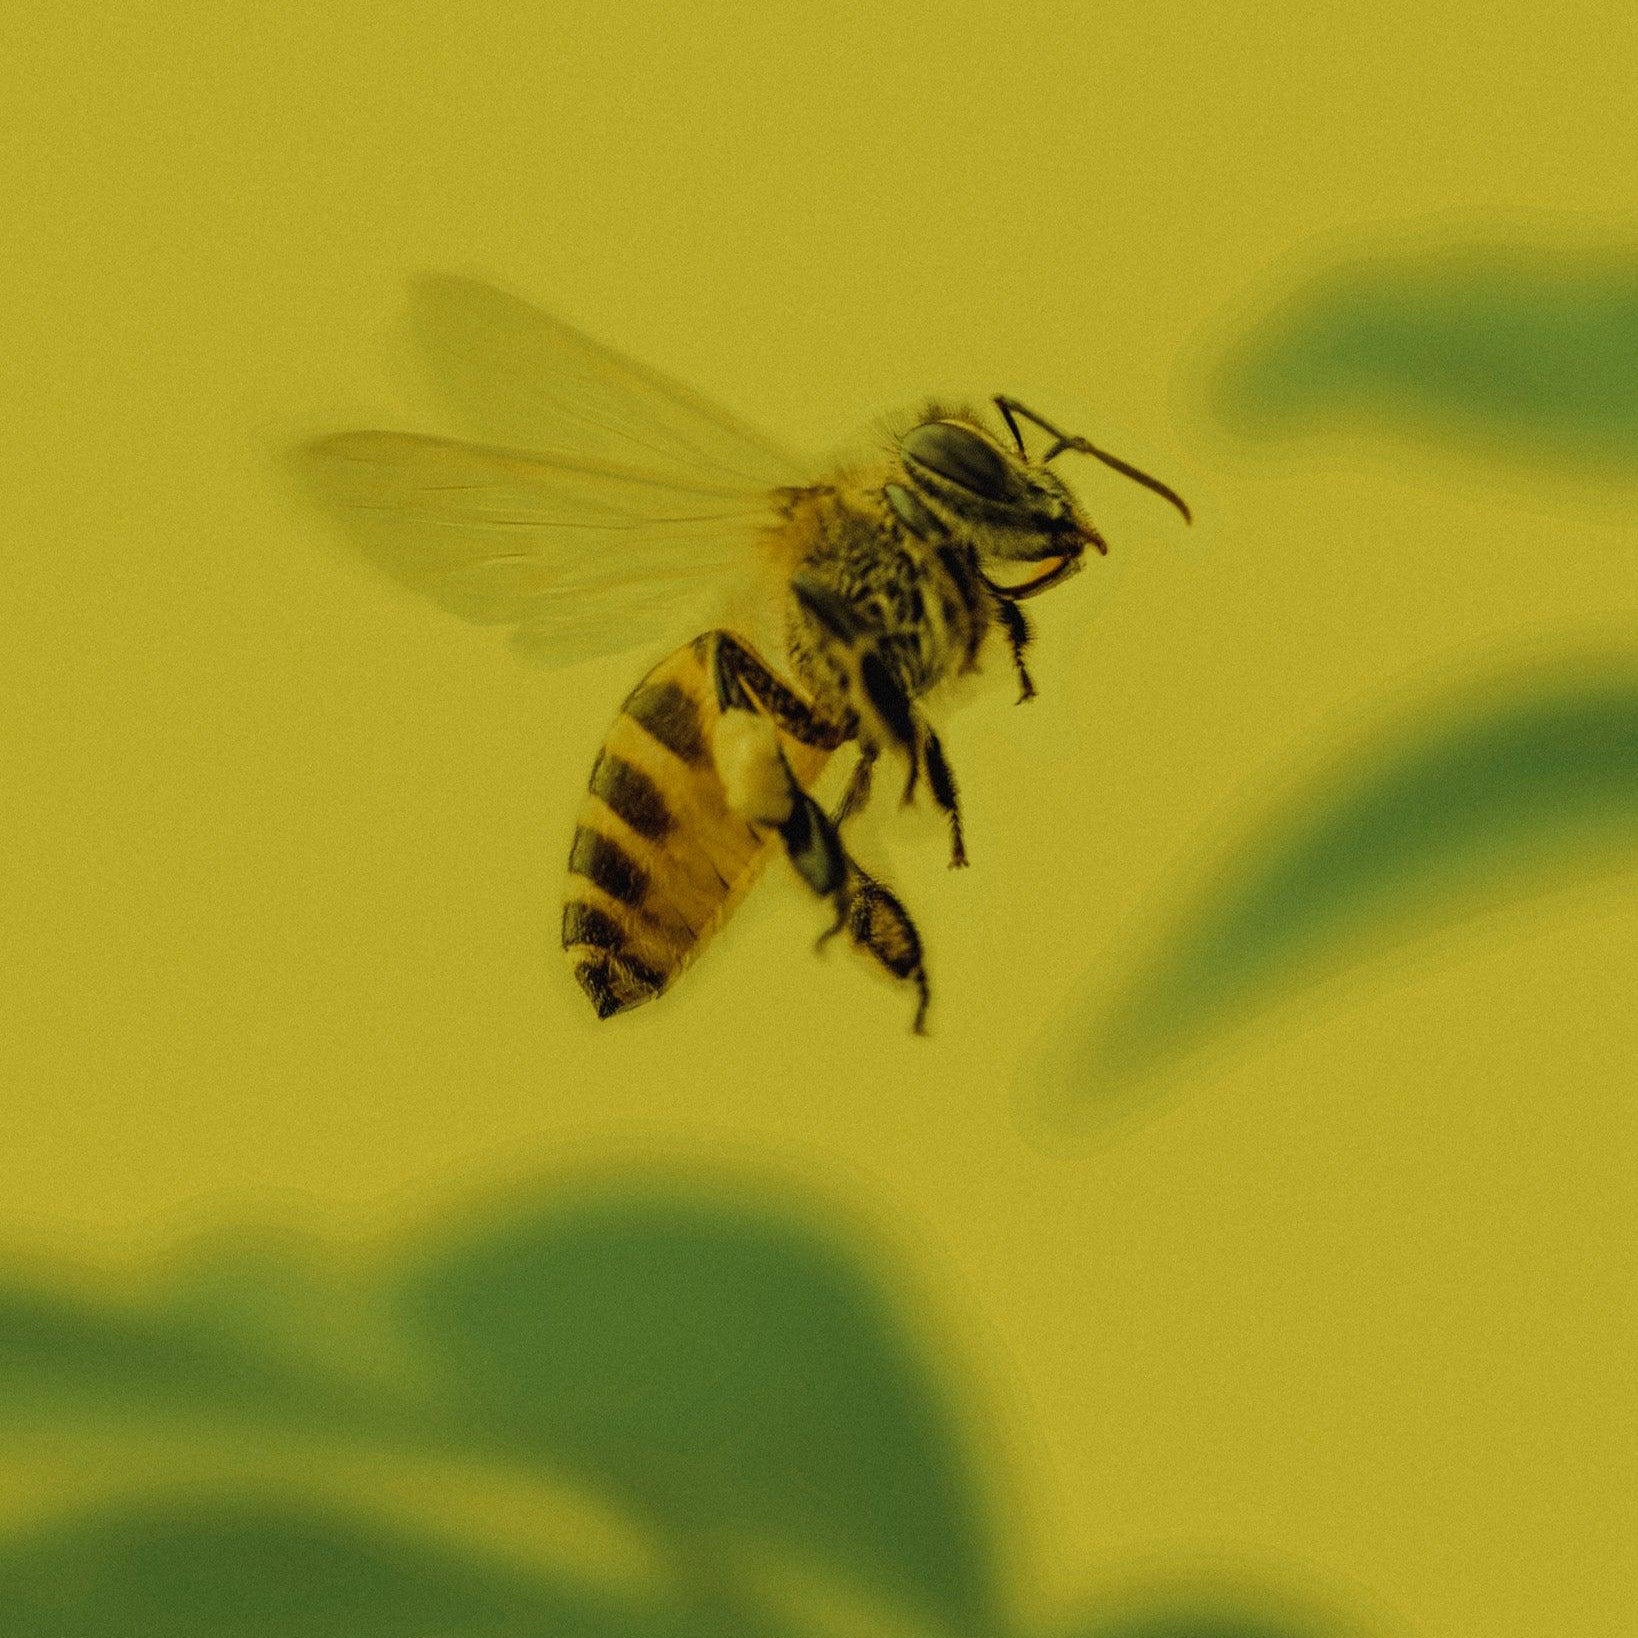 Výroba a využití včelích produktů: Přínosy a možnosti v Davidově ekologické včelí farmě - Davidova ekologická včelí farma